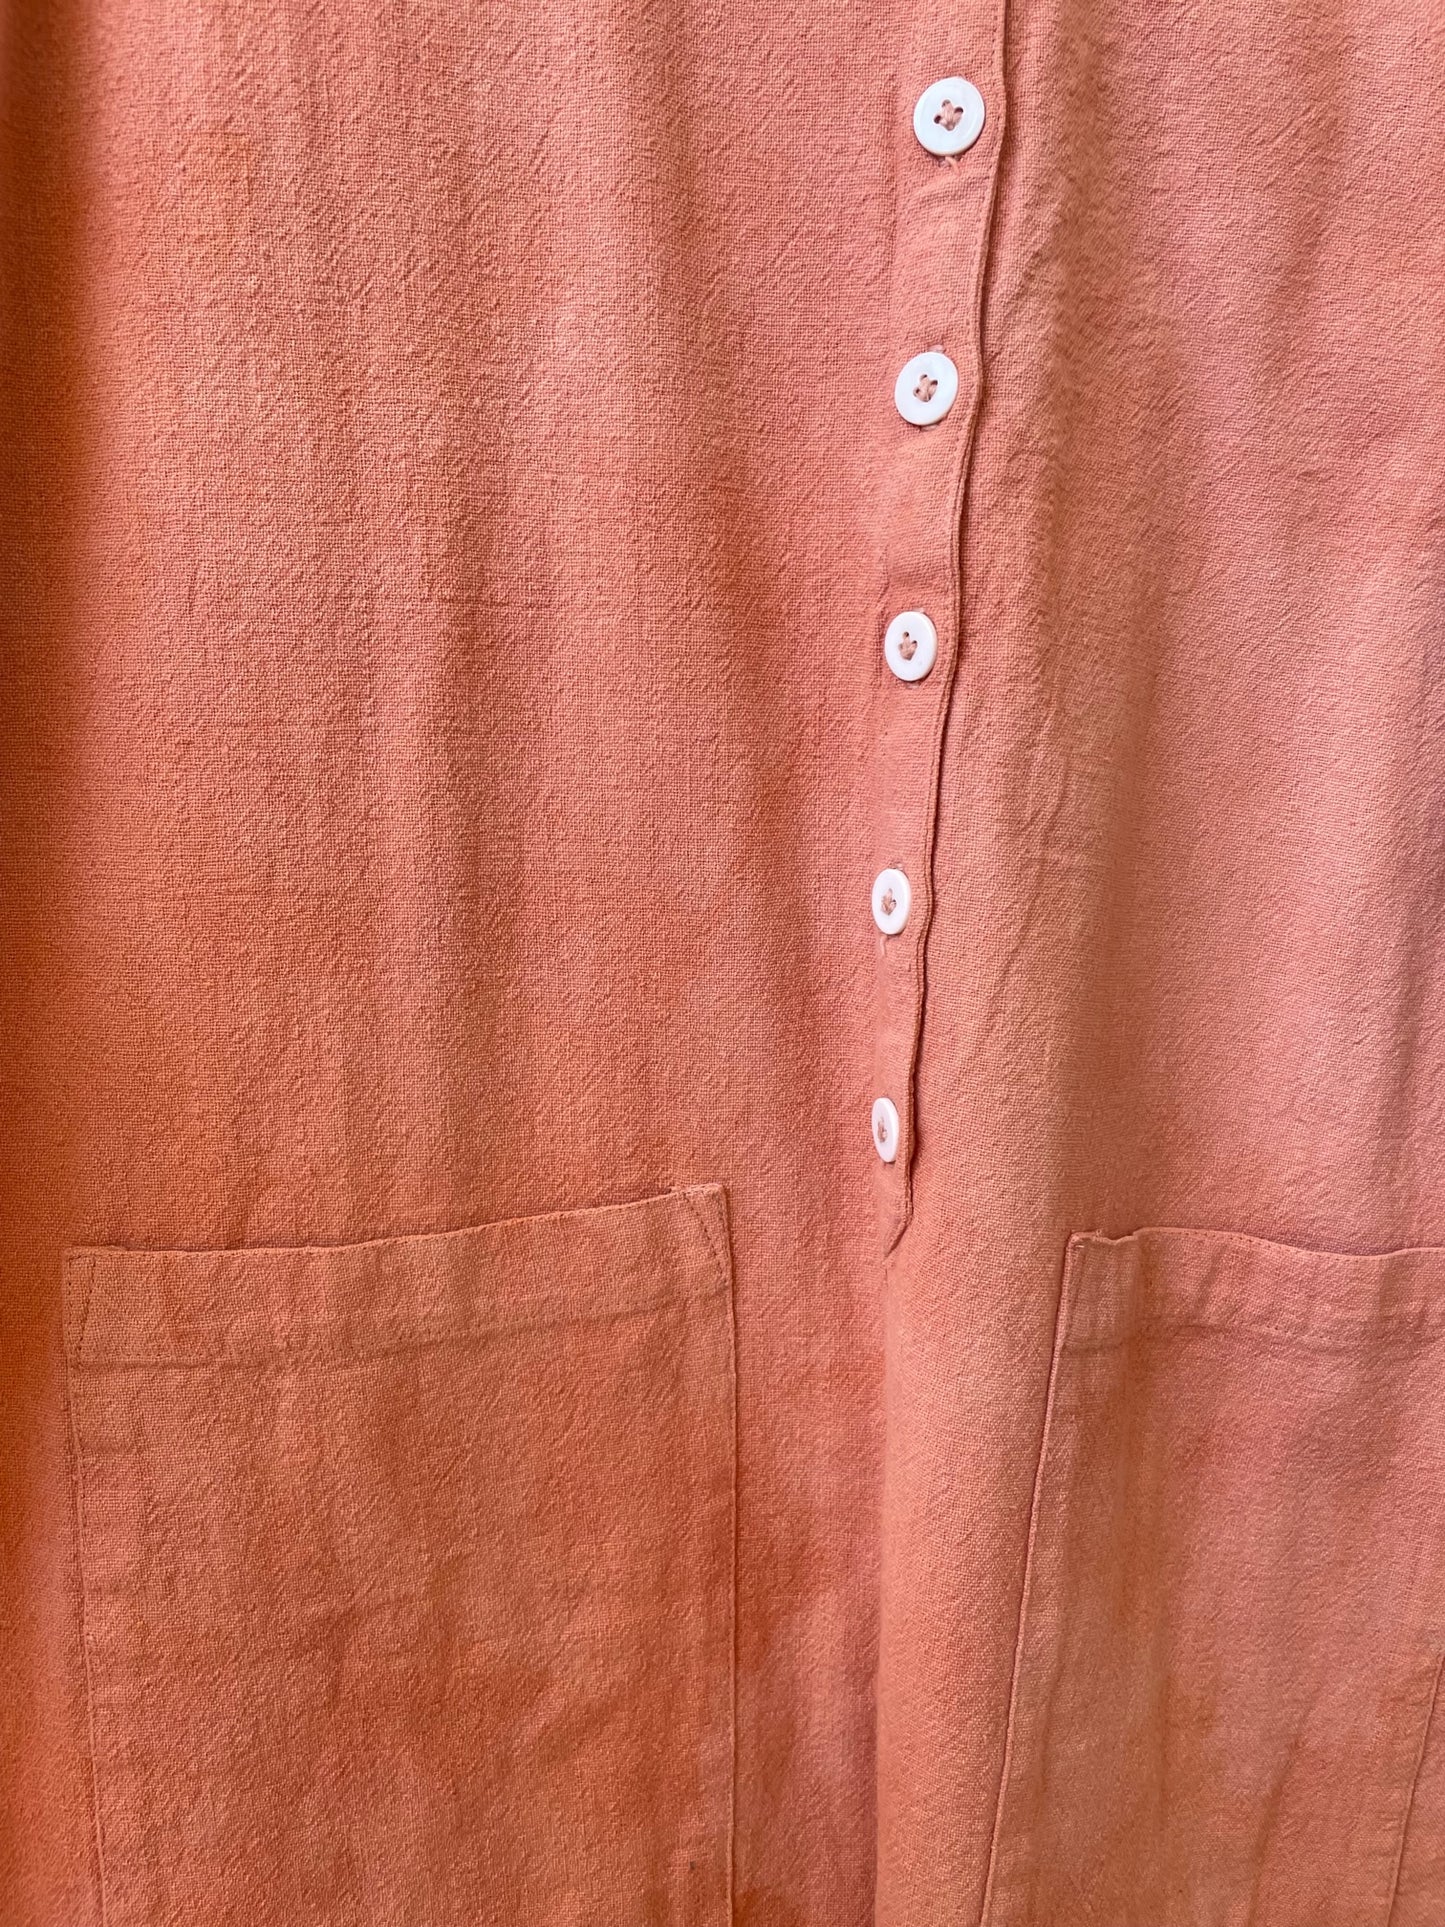 #61 Tie-dye Peach Jumpsuit M/L